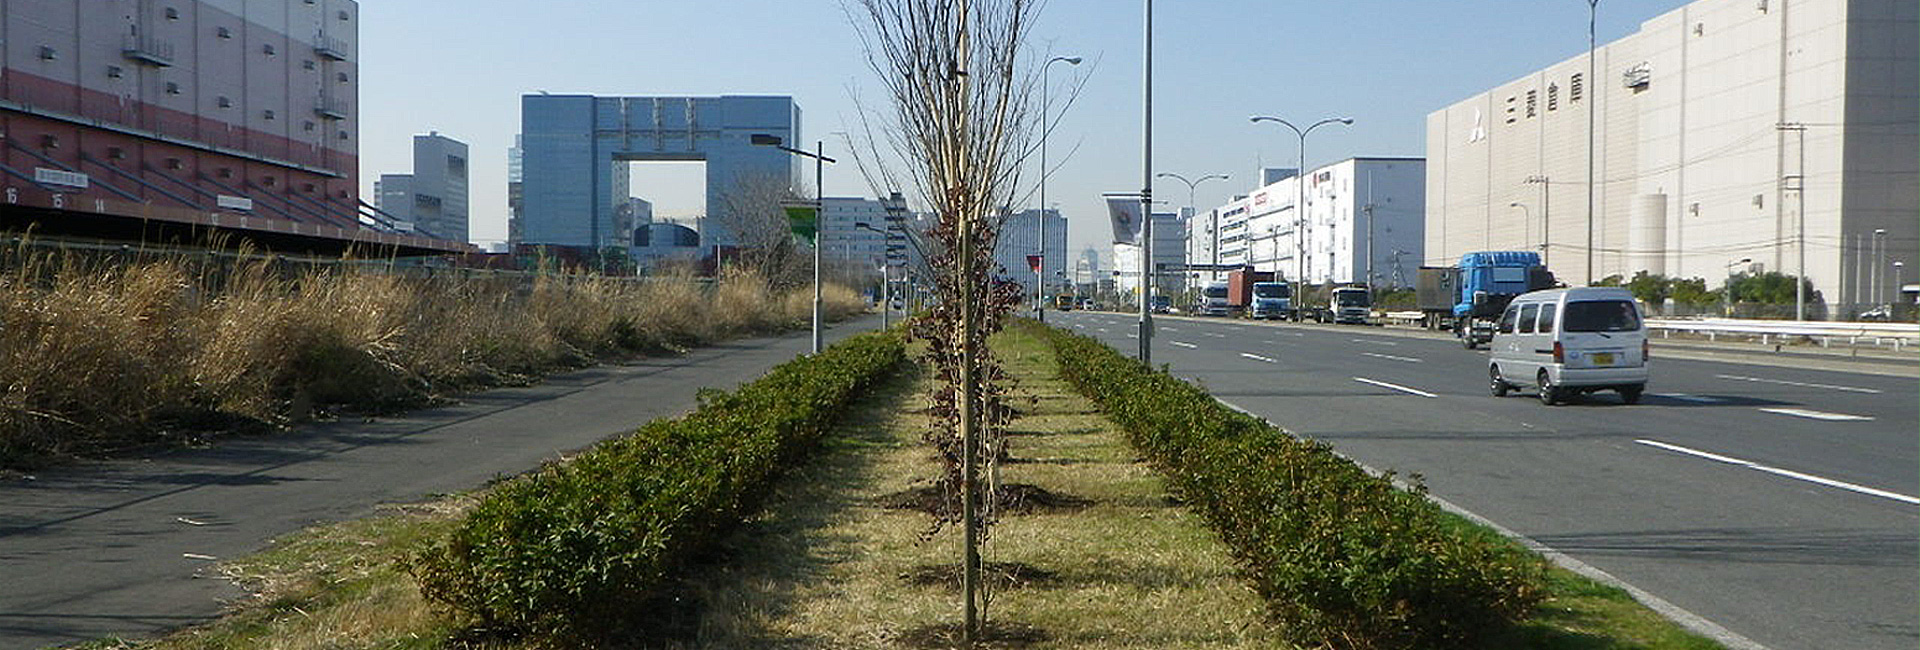 株式会社 藤嶋造園 は 東京都小平市を拠点とする造園会社